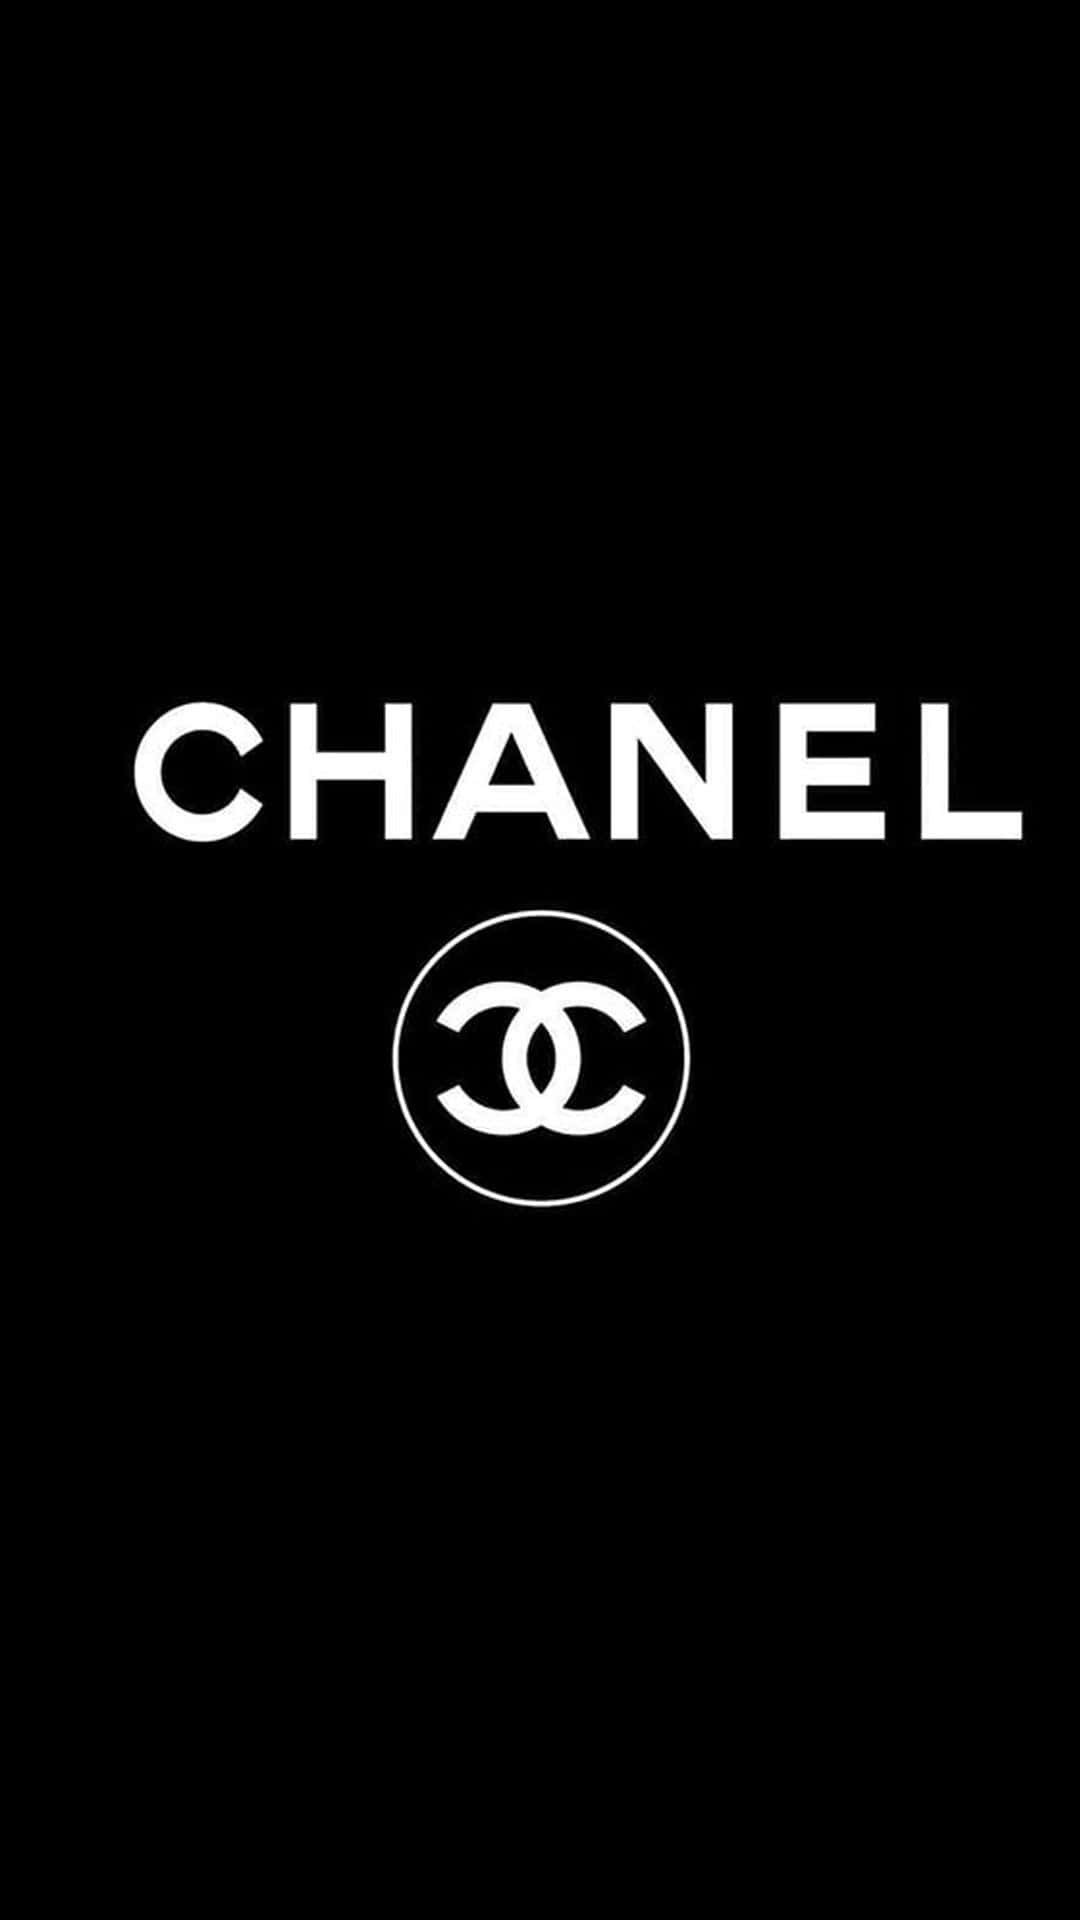 Illogo Iconico Di Chanel, Simbolo Di Eleganza Senza Tempo.